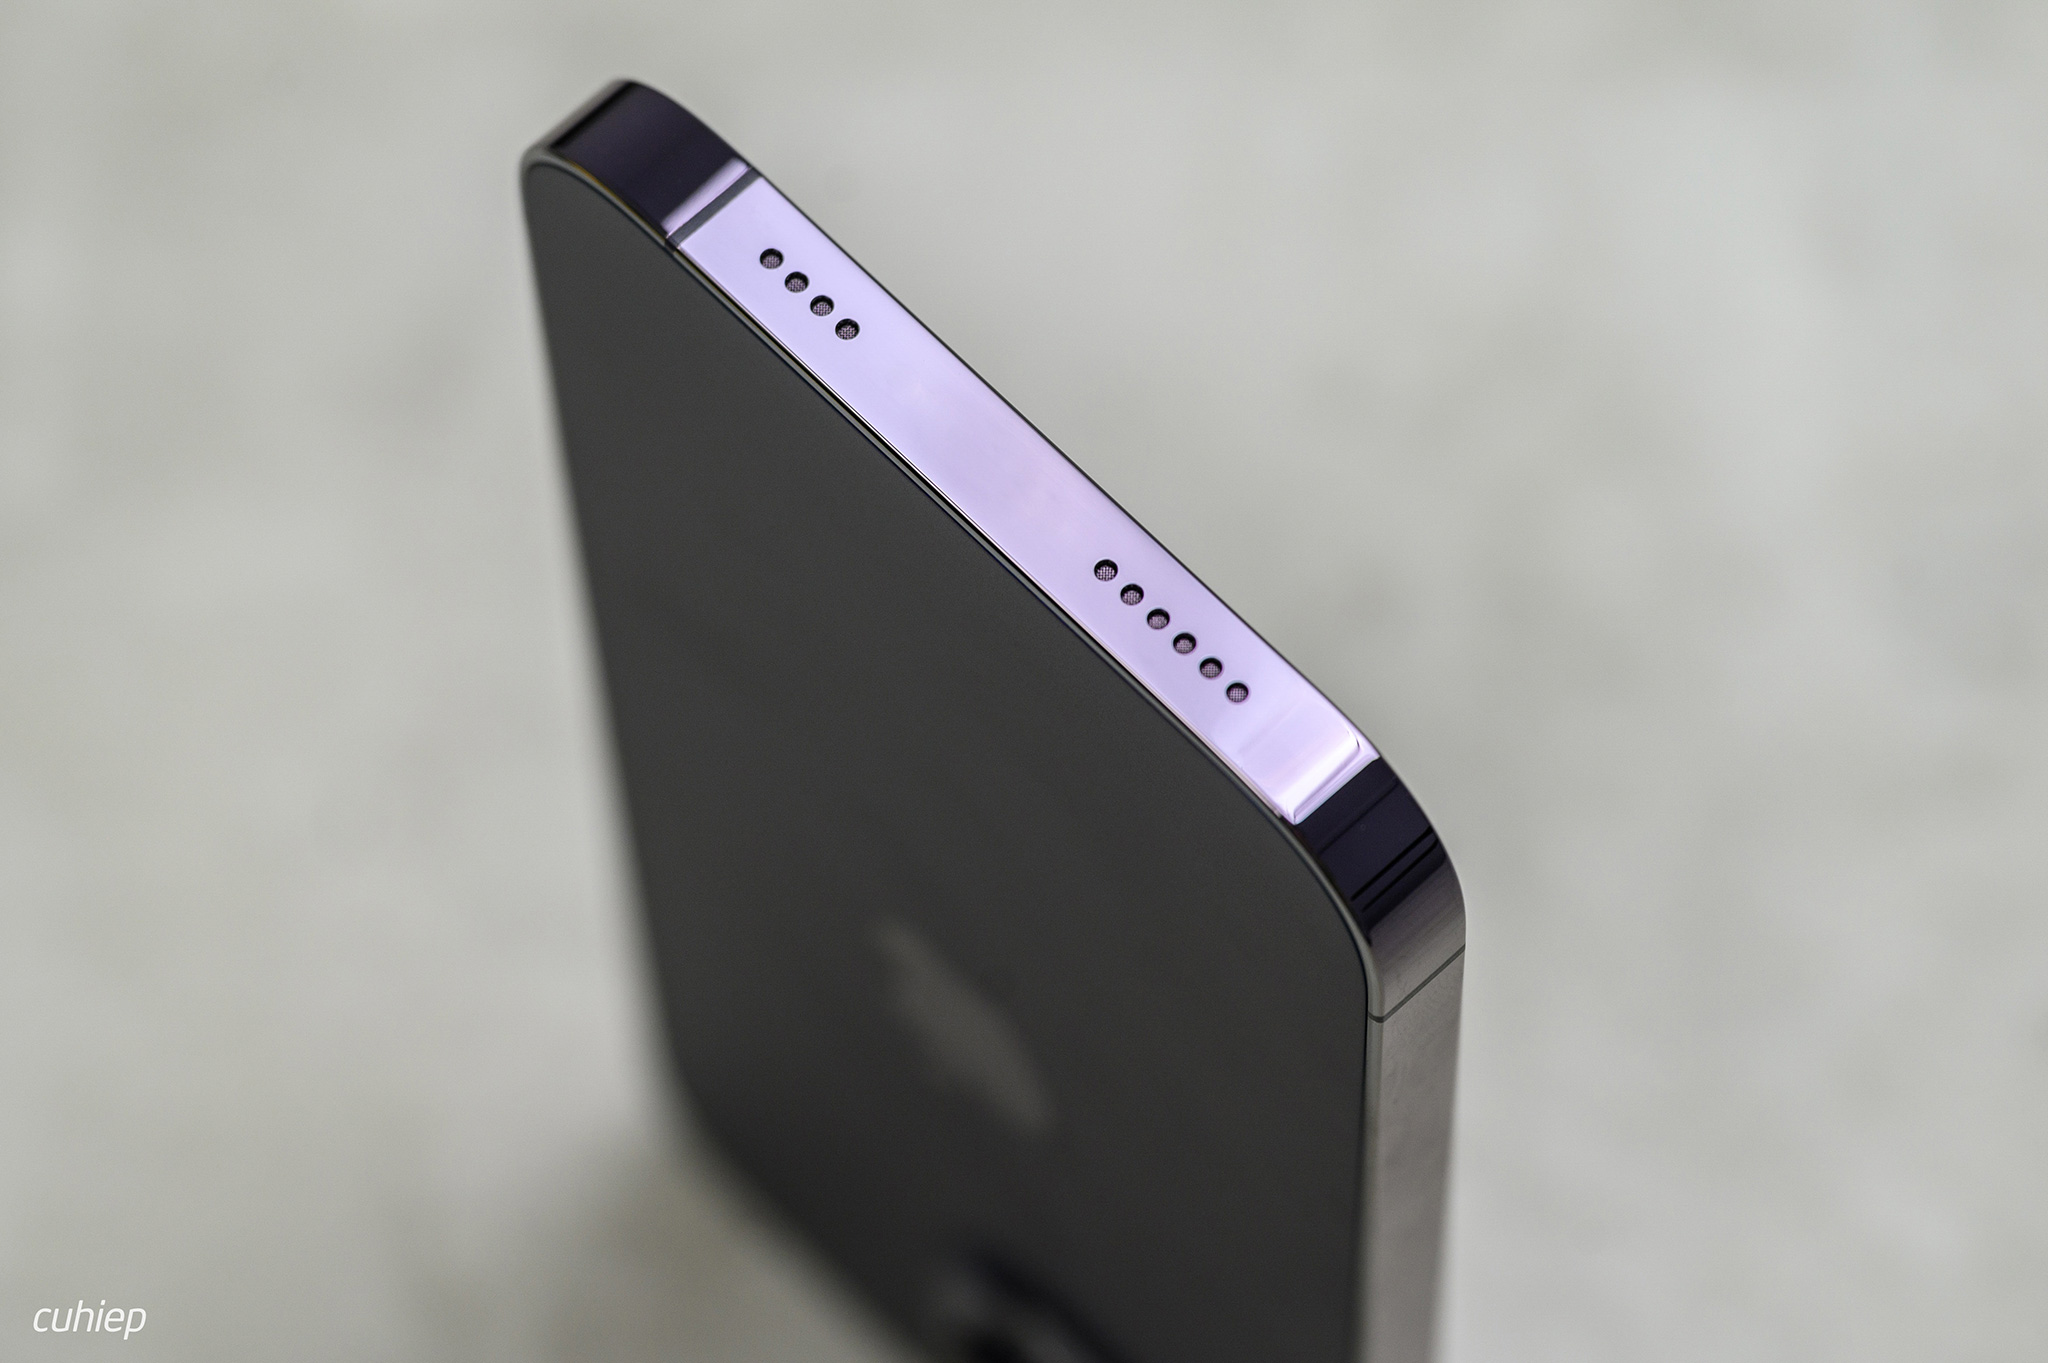 Bỏ khay SIM, iPhone sắp không còn kết nối vật lý nữa